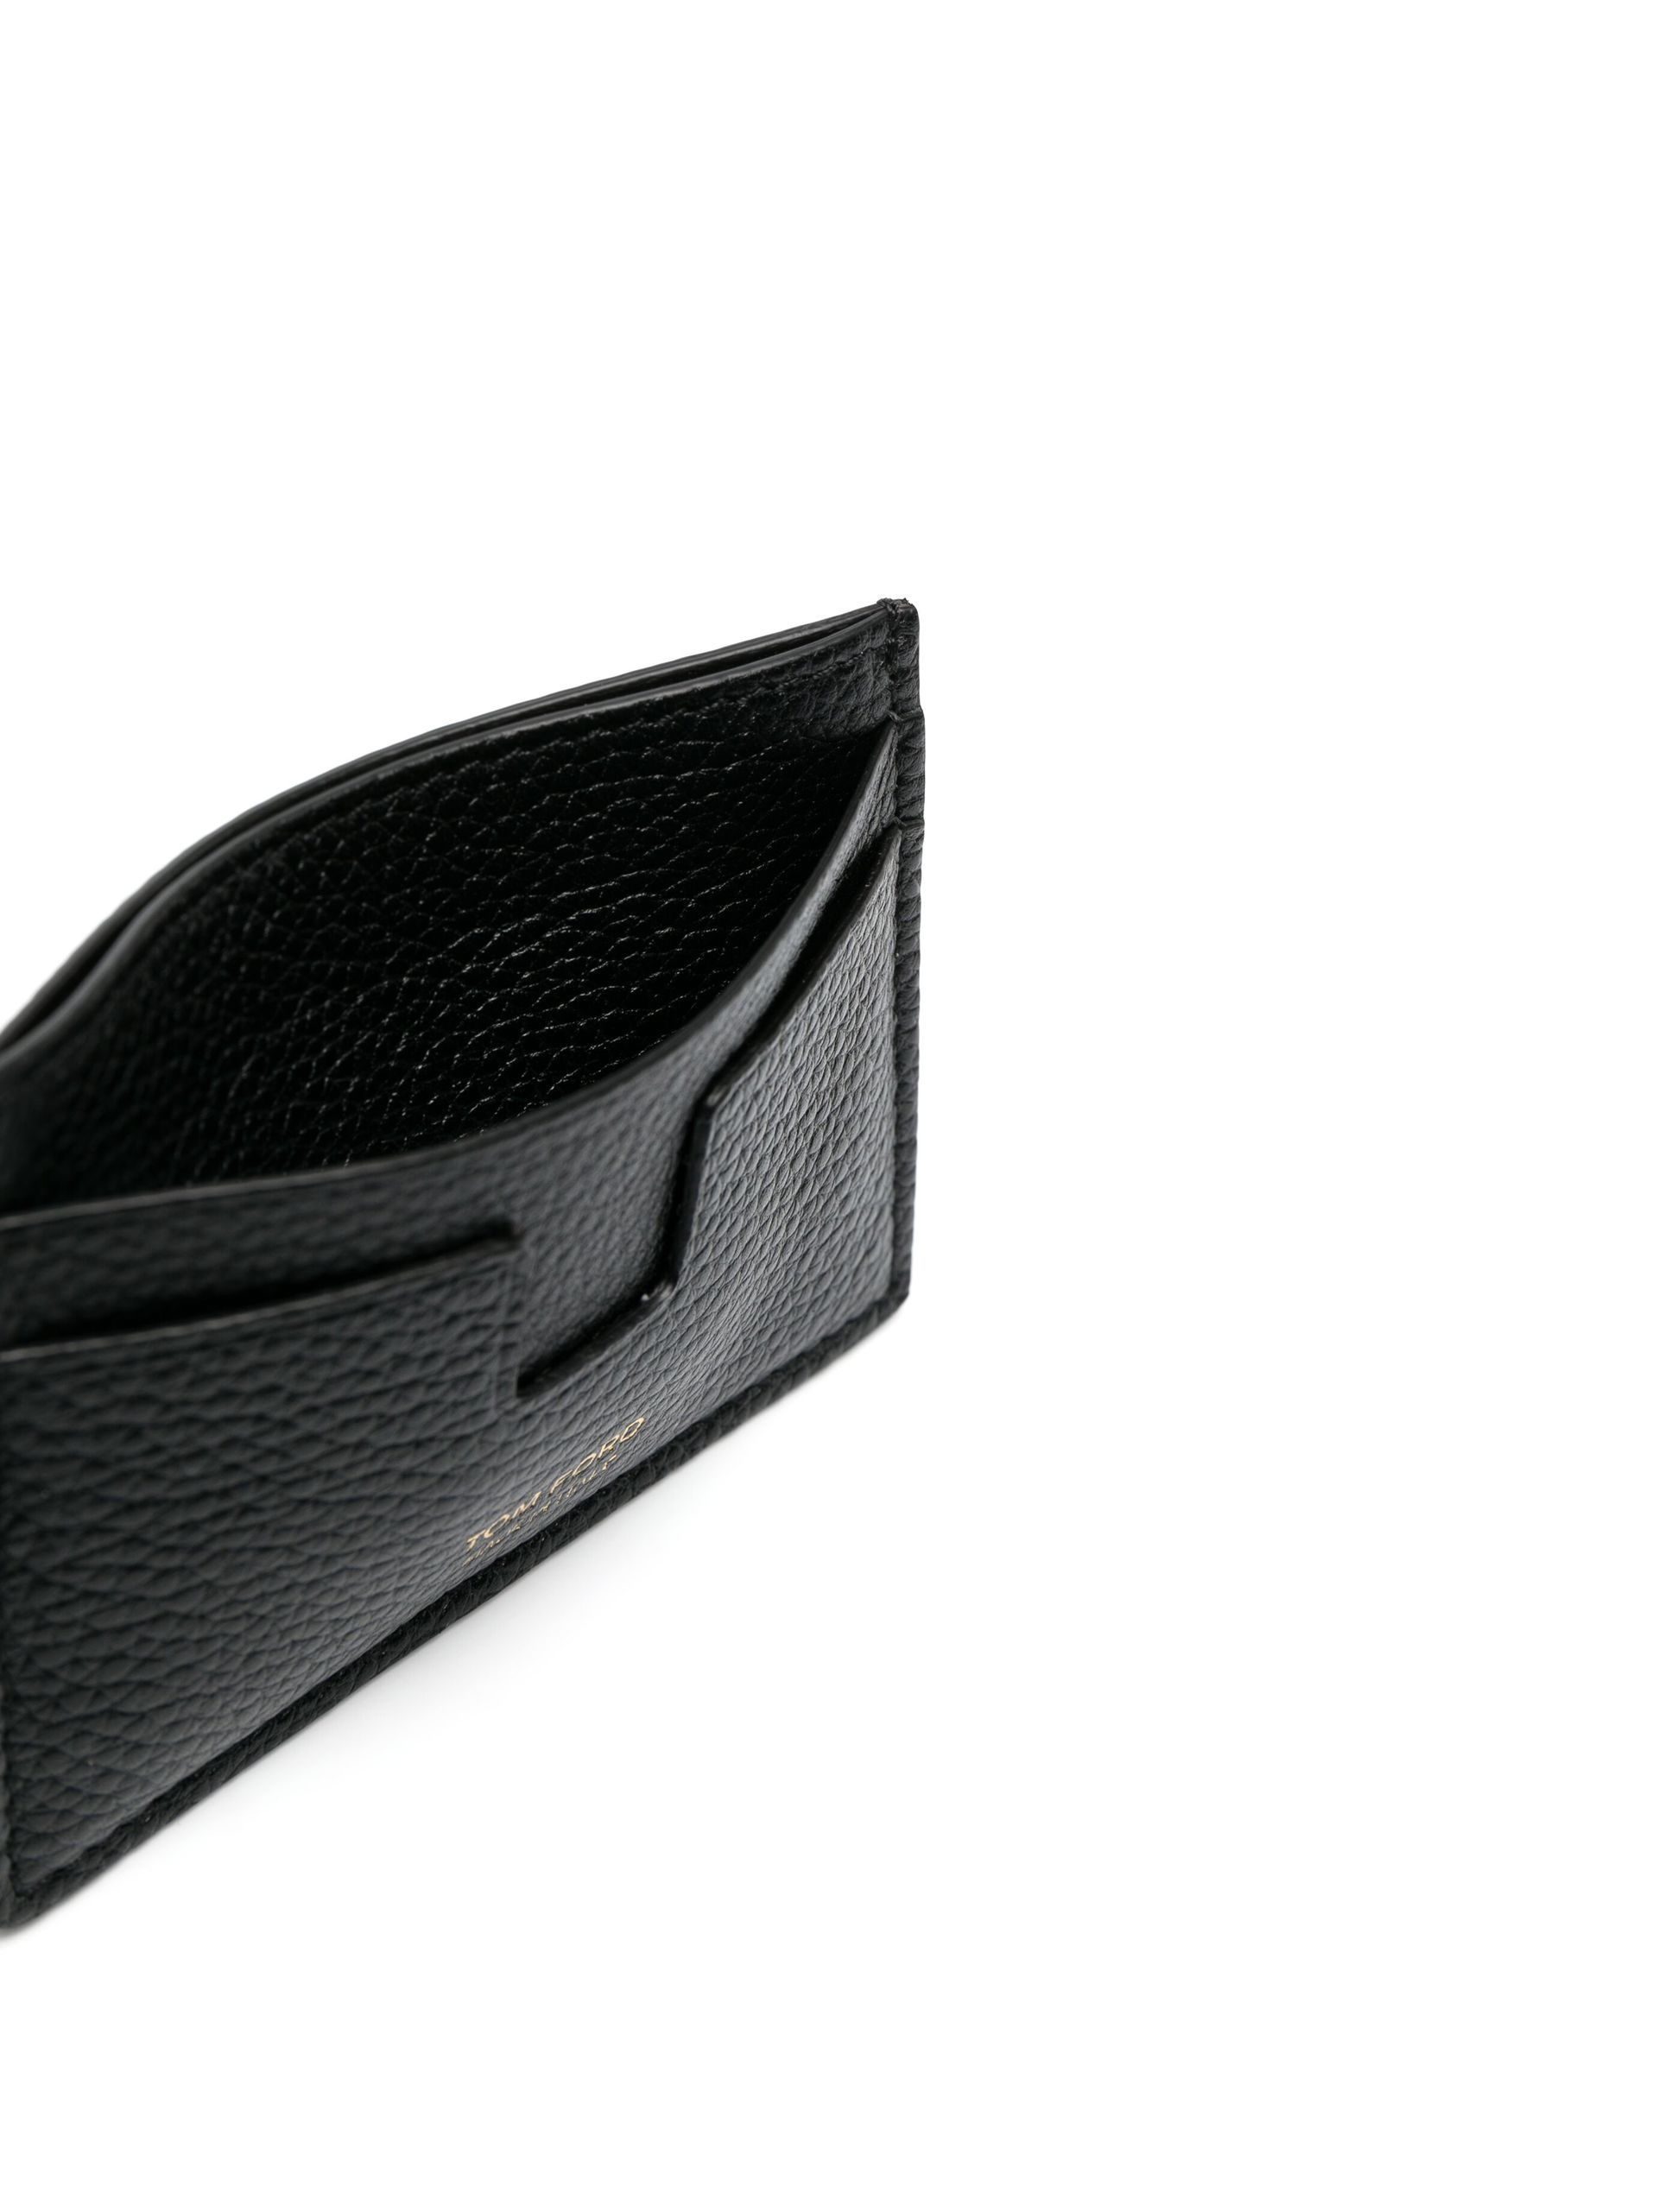 black leather card holder - 3